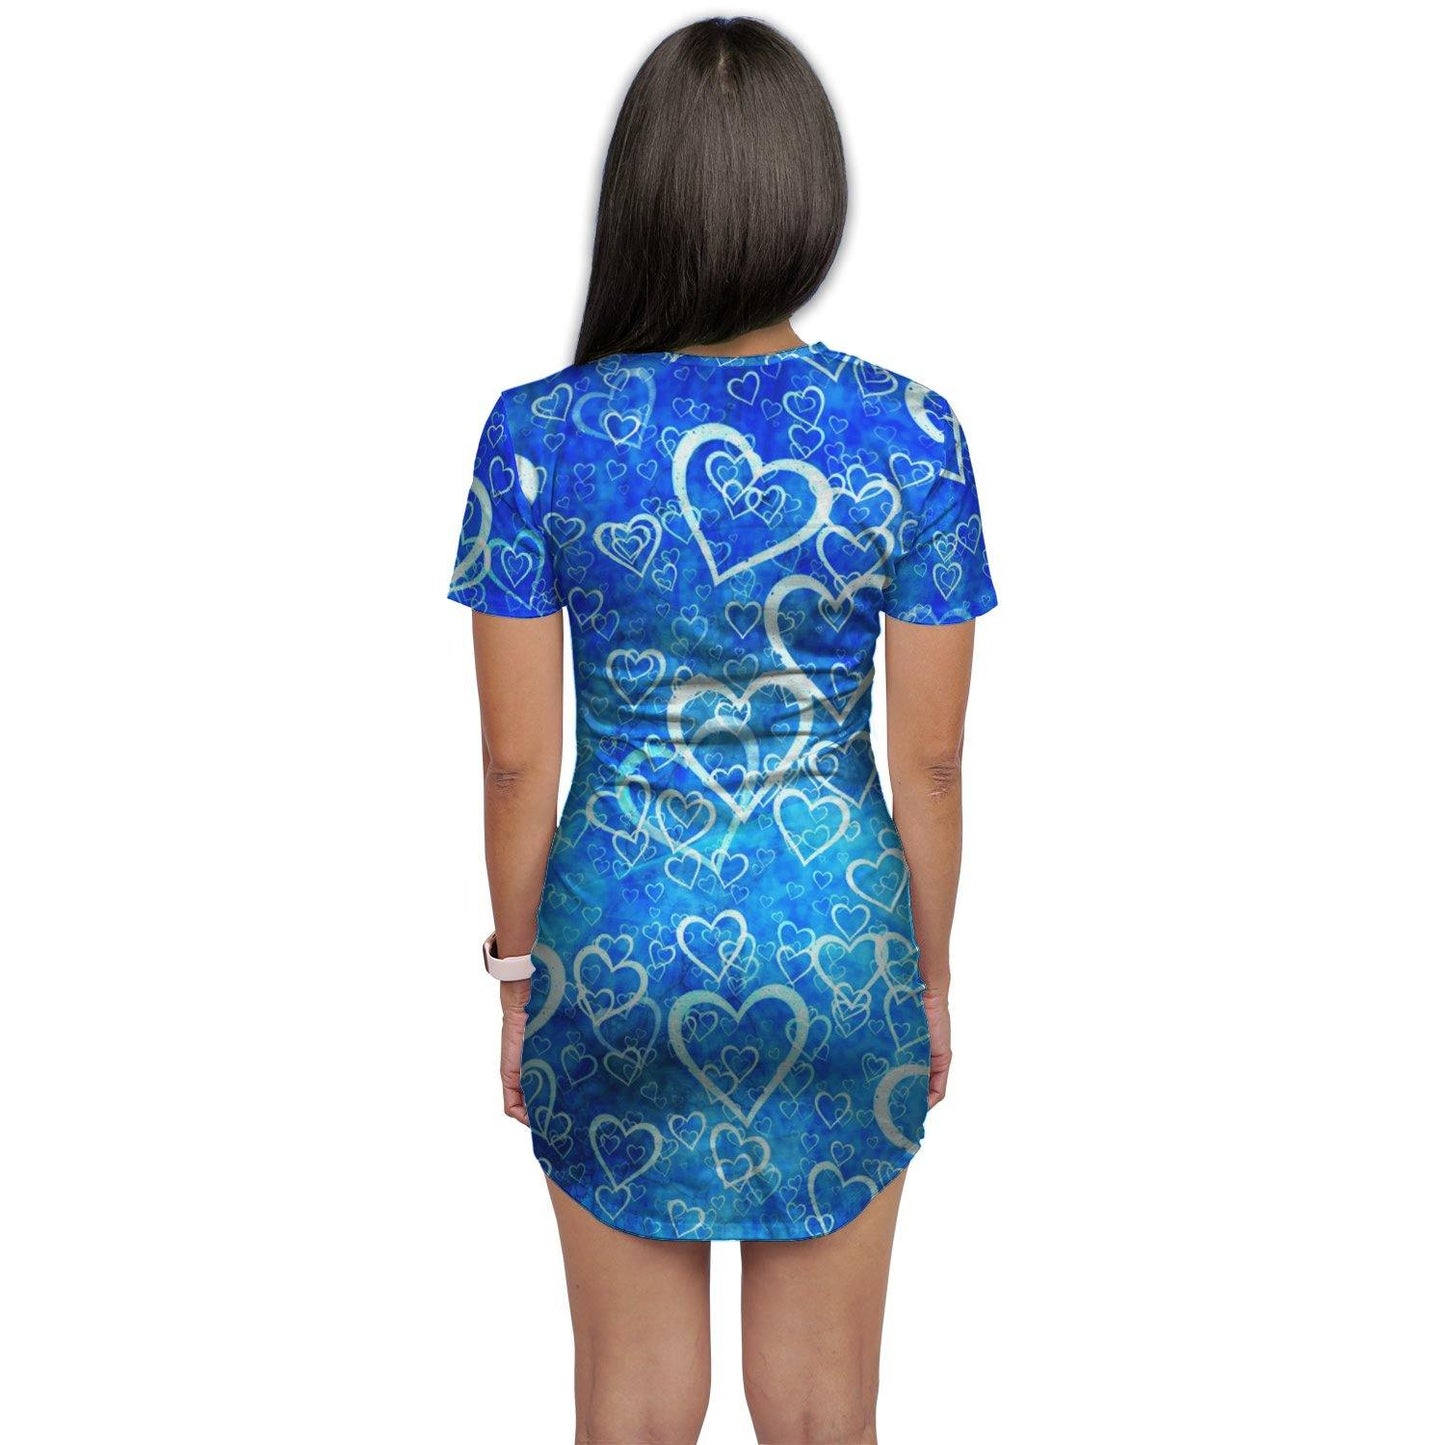 Blue Hearts T-Shirt Dress - Schoppix Gifts